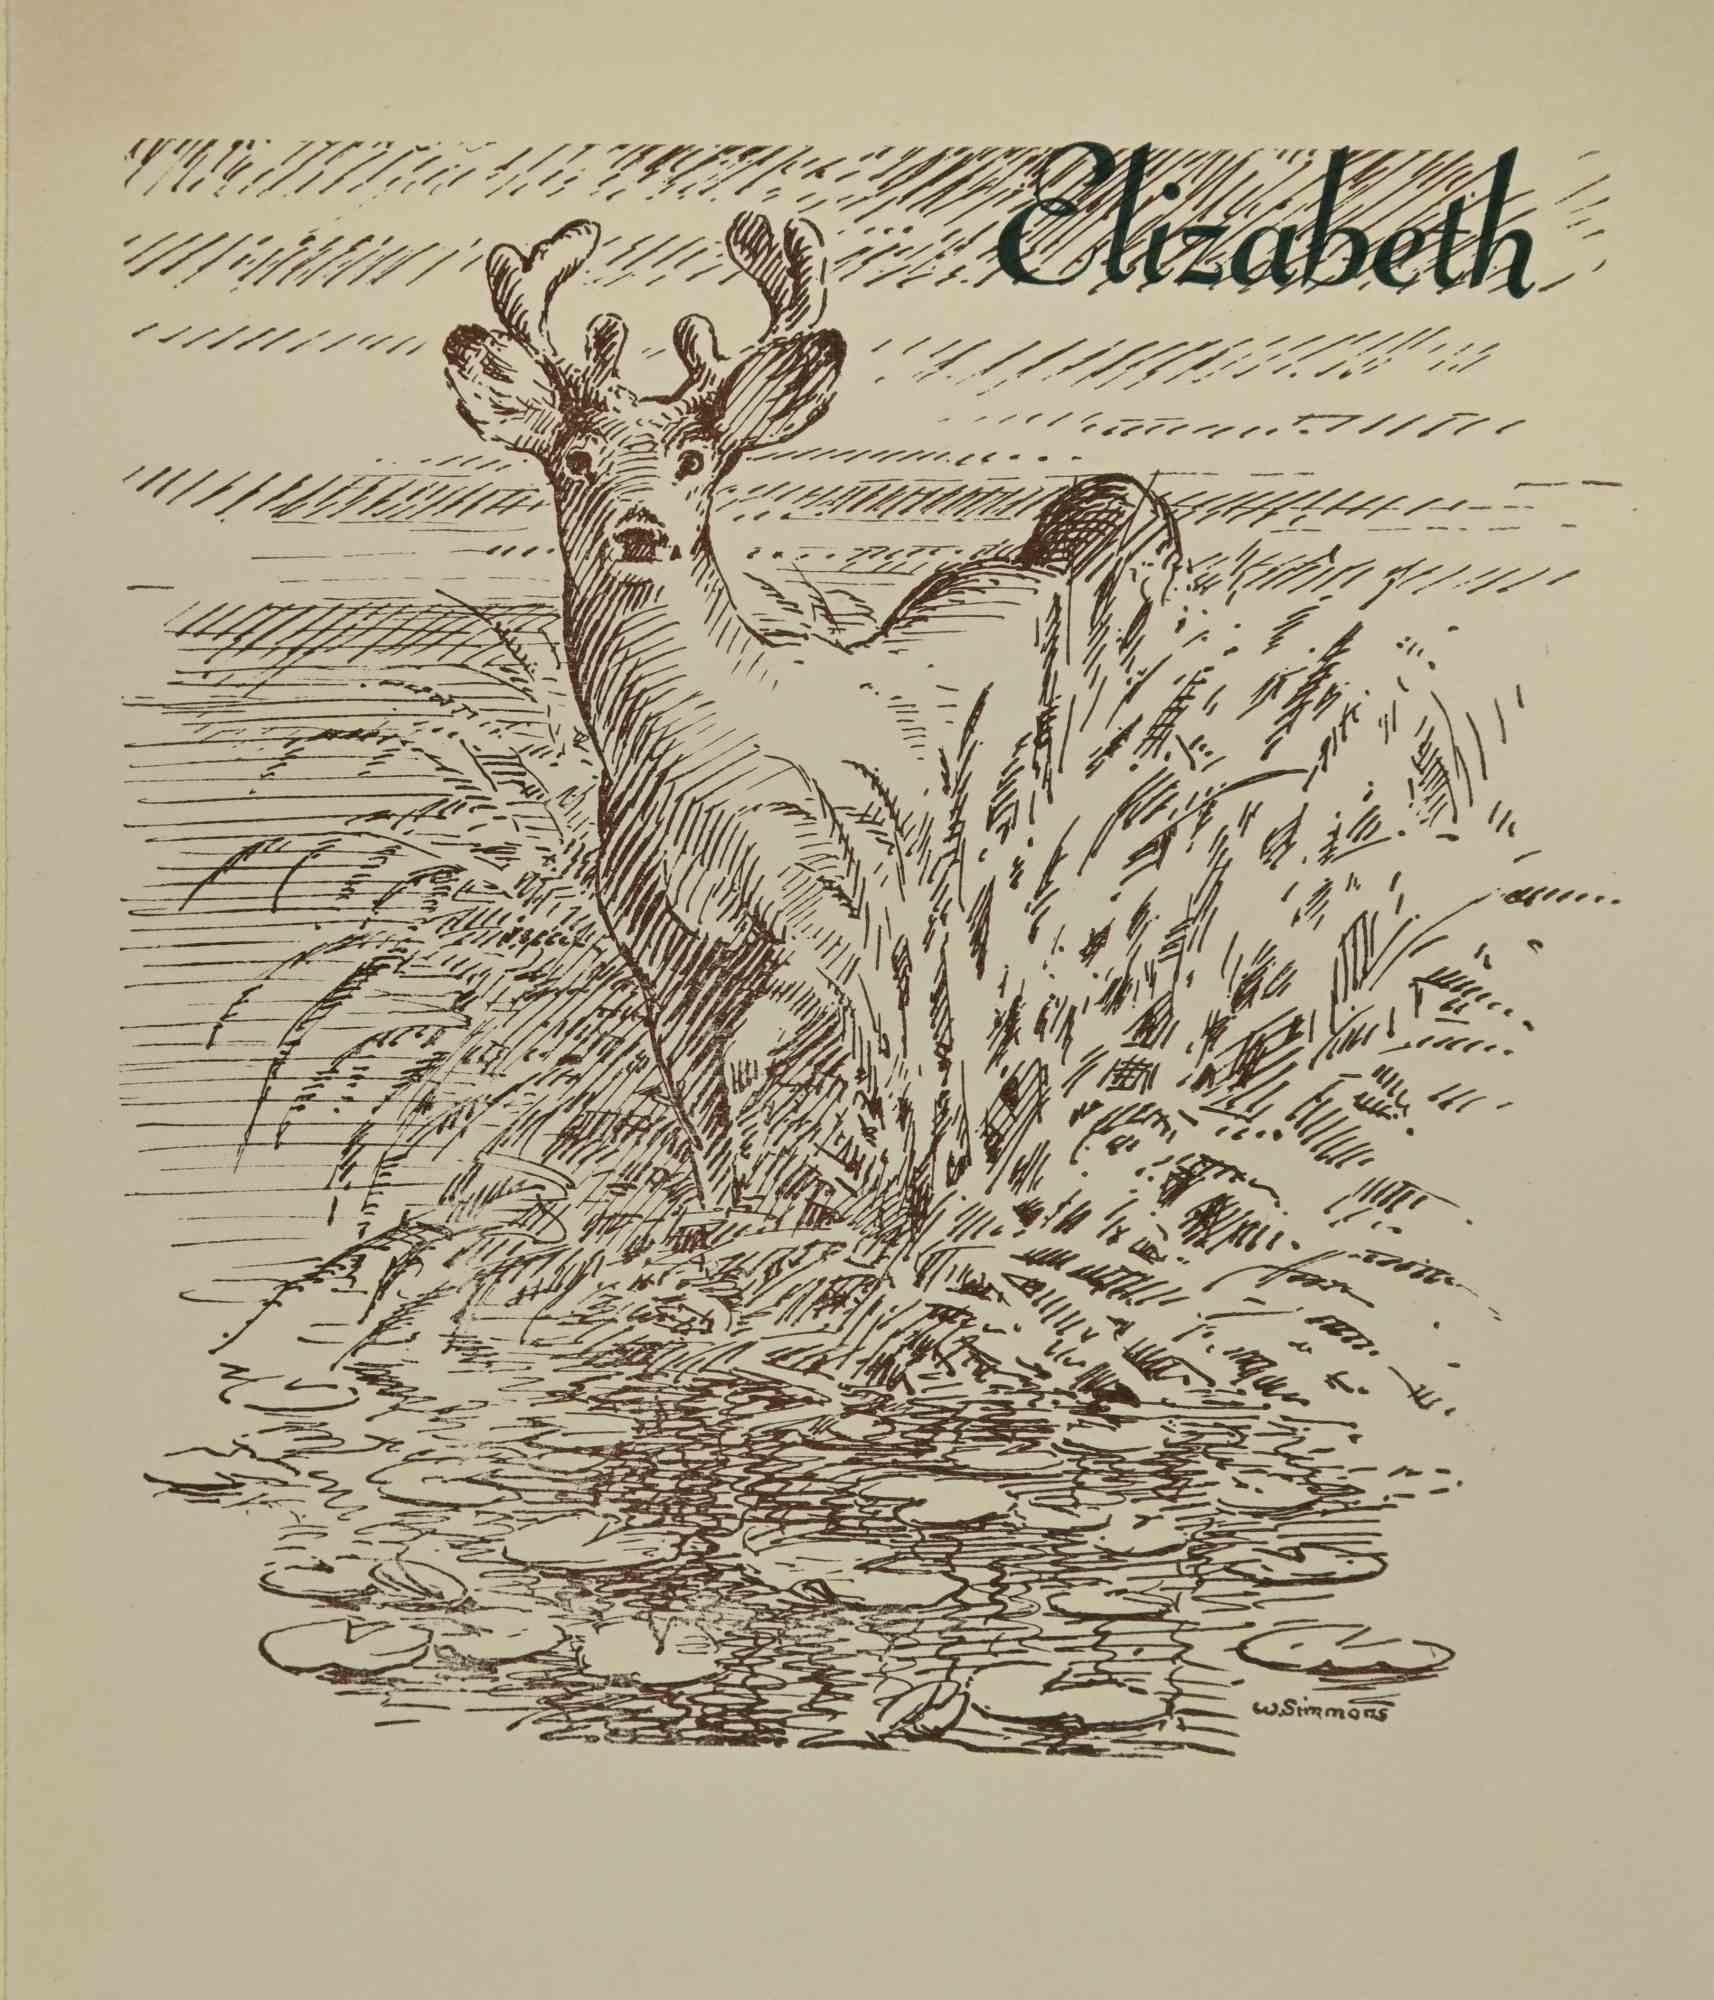 Ex- Libris - Elizabeth ist ein Kunstwerk, das in den 1930er Jahren von dem amerikanischen Künstler William Simmons geschaffen wurde.

Holzschnitt B./W. Druck auf Elfenbeinpapier. Signiert auf der Platte am rechten Rand. Das Werk ist auf Karton